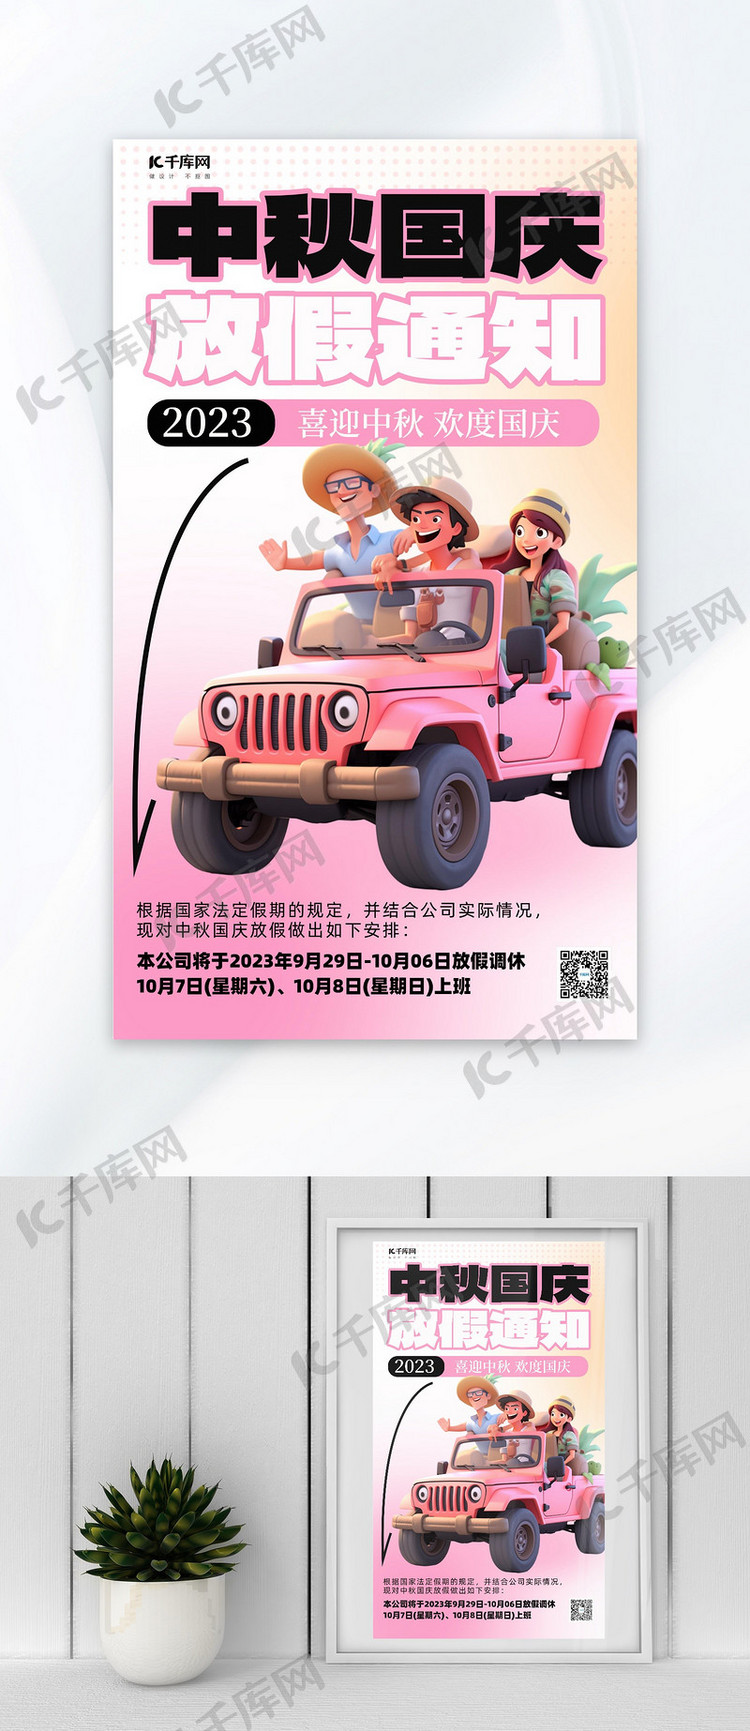 中秋国庆出游骑车紫色简约广告营销海报